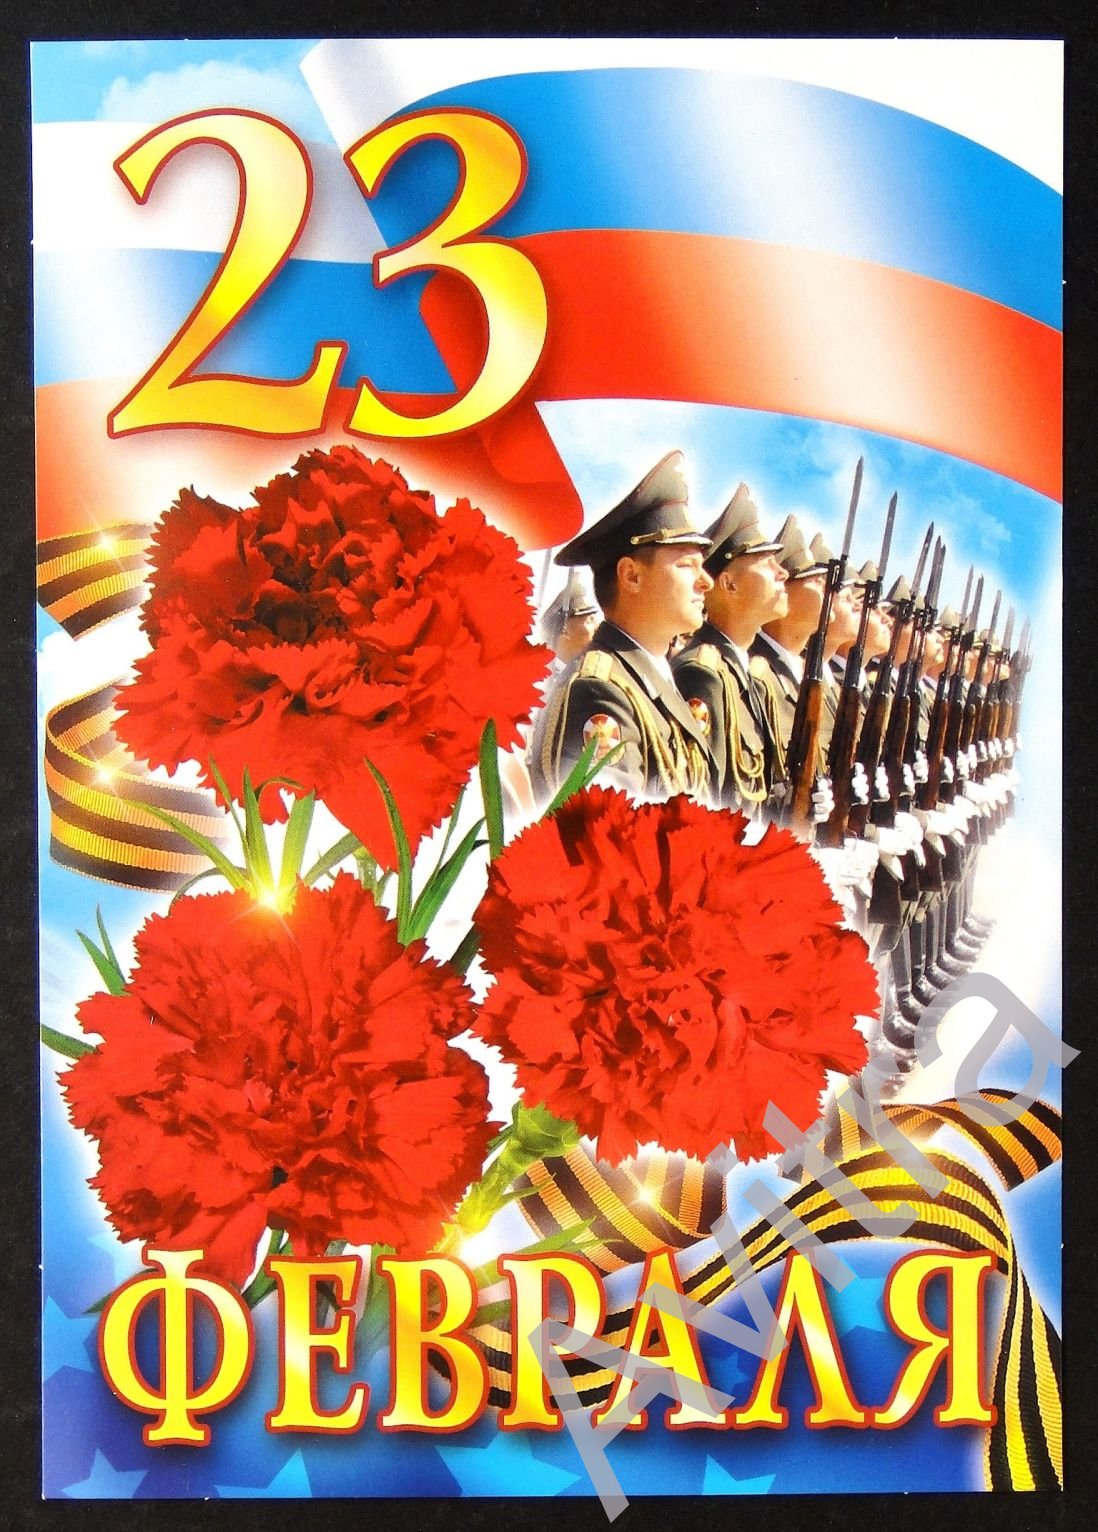 23 февраля день защитника отечества открытки с изображением флага России 23 февраля день защитника отечества открытки посвящённые празднику 23 февраля с изображением флага  России белый голубой красный цвет с поздравлениями мужчинам 